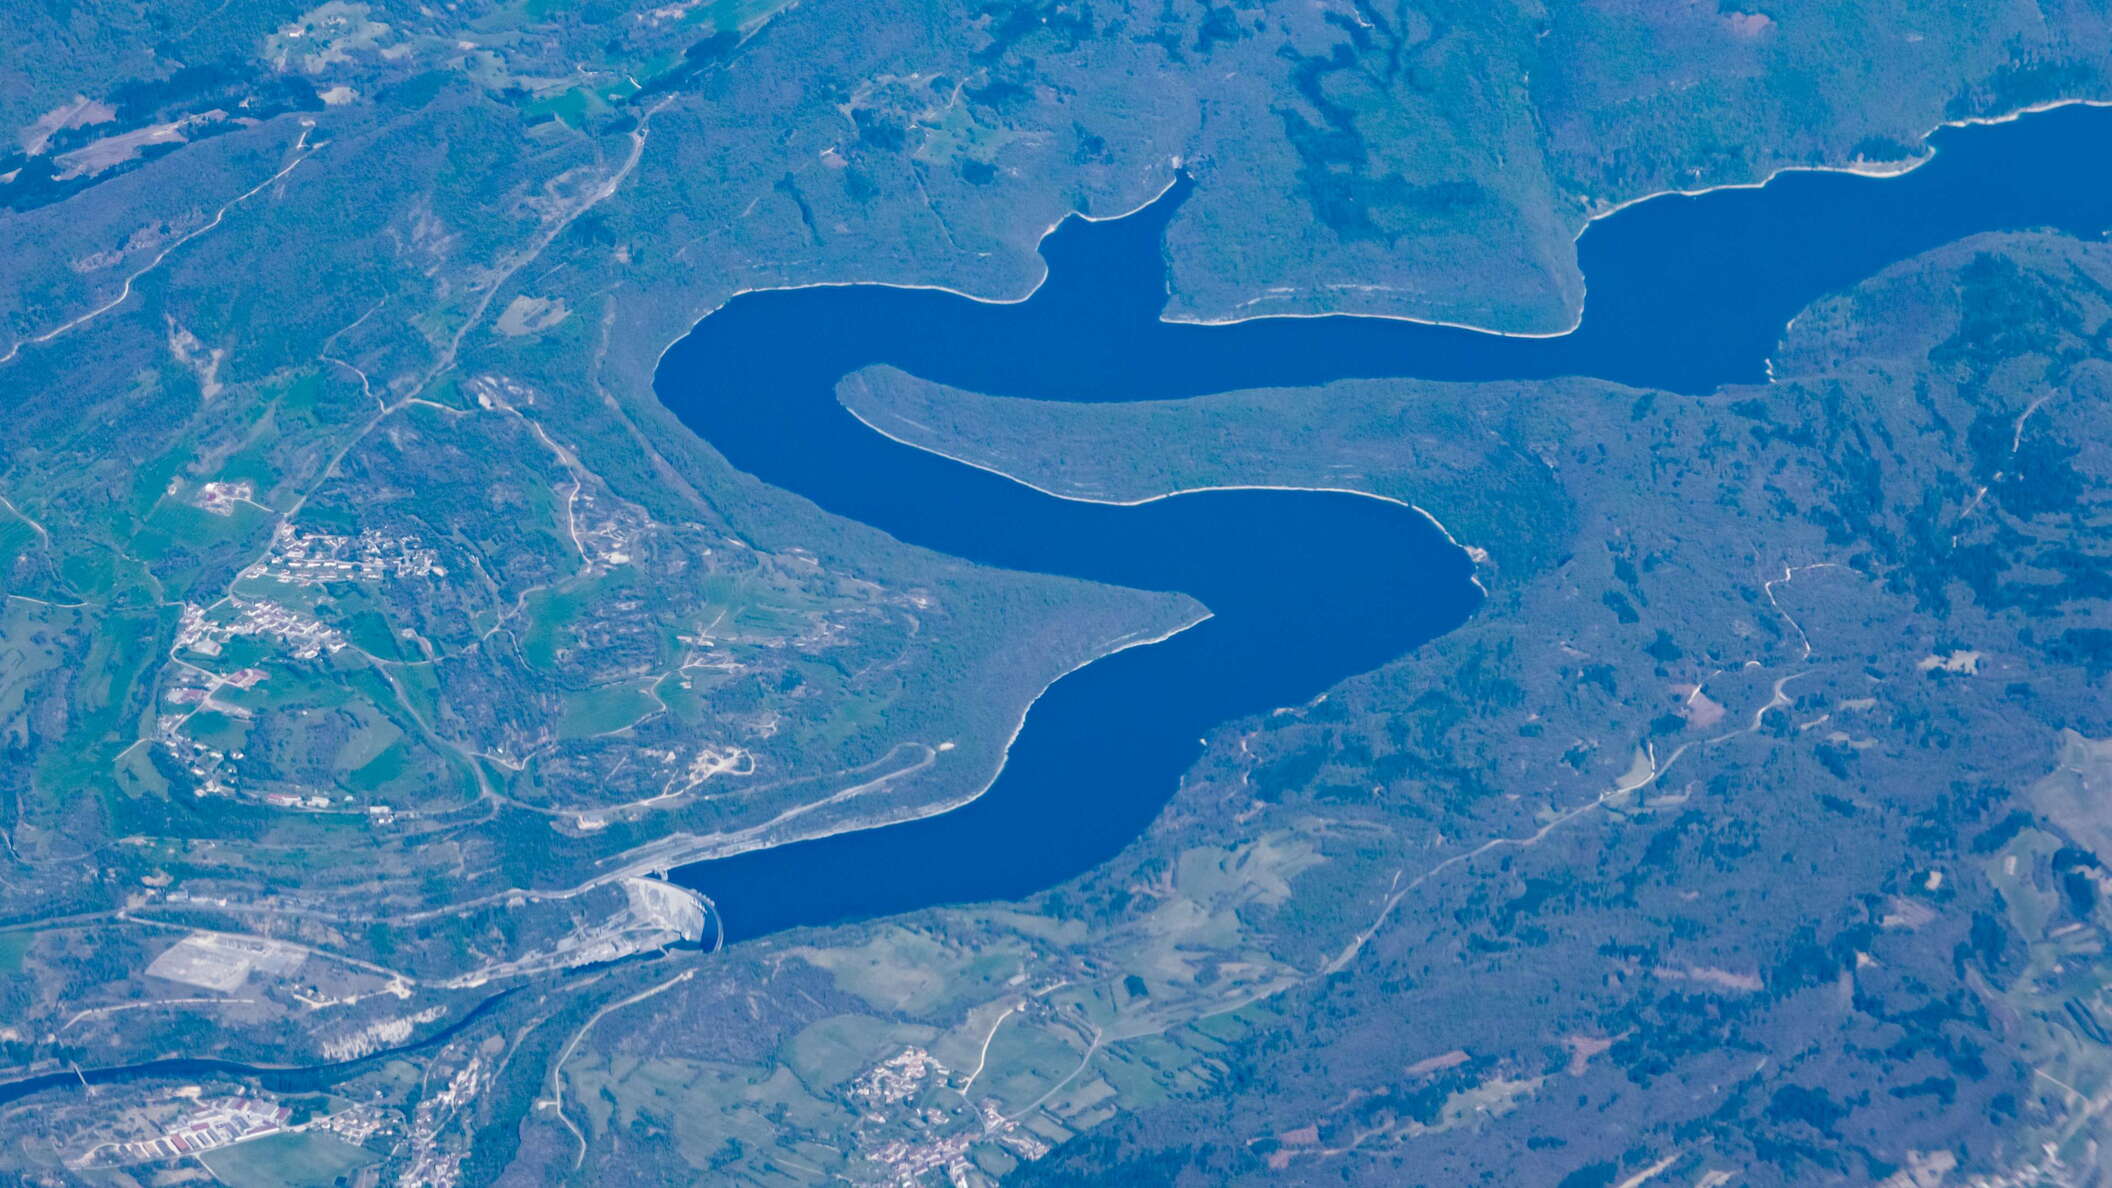 Barrage de Vouglans and Lac de Vouglans